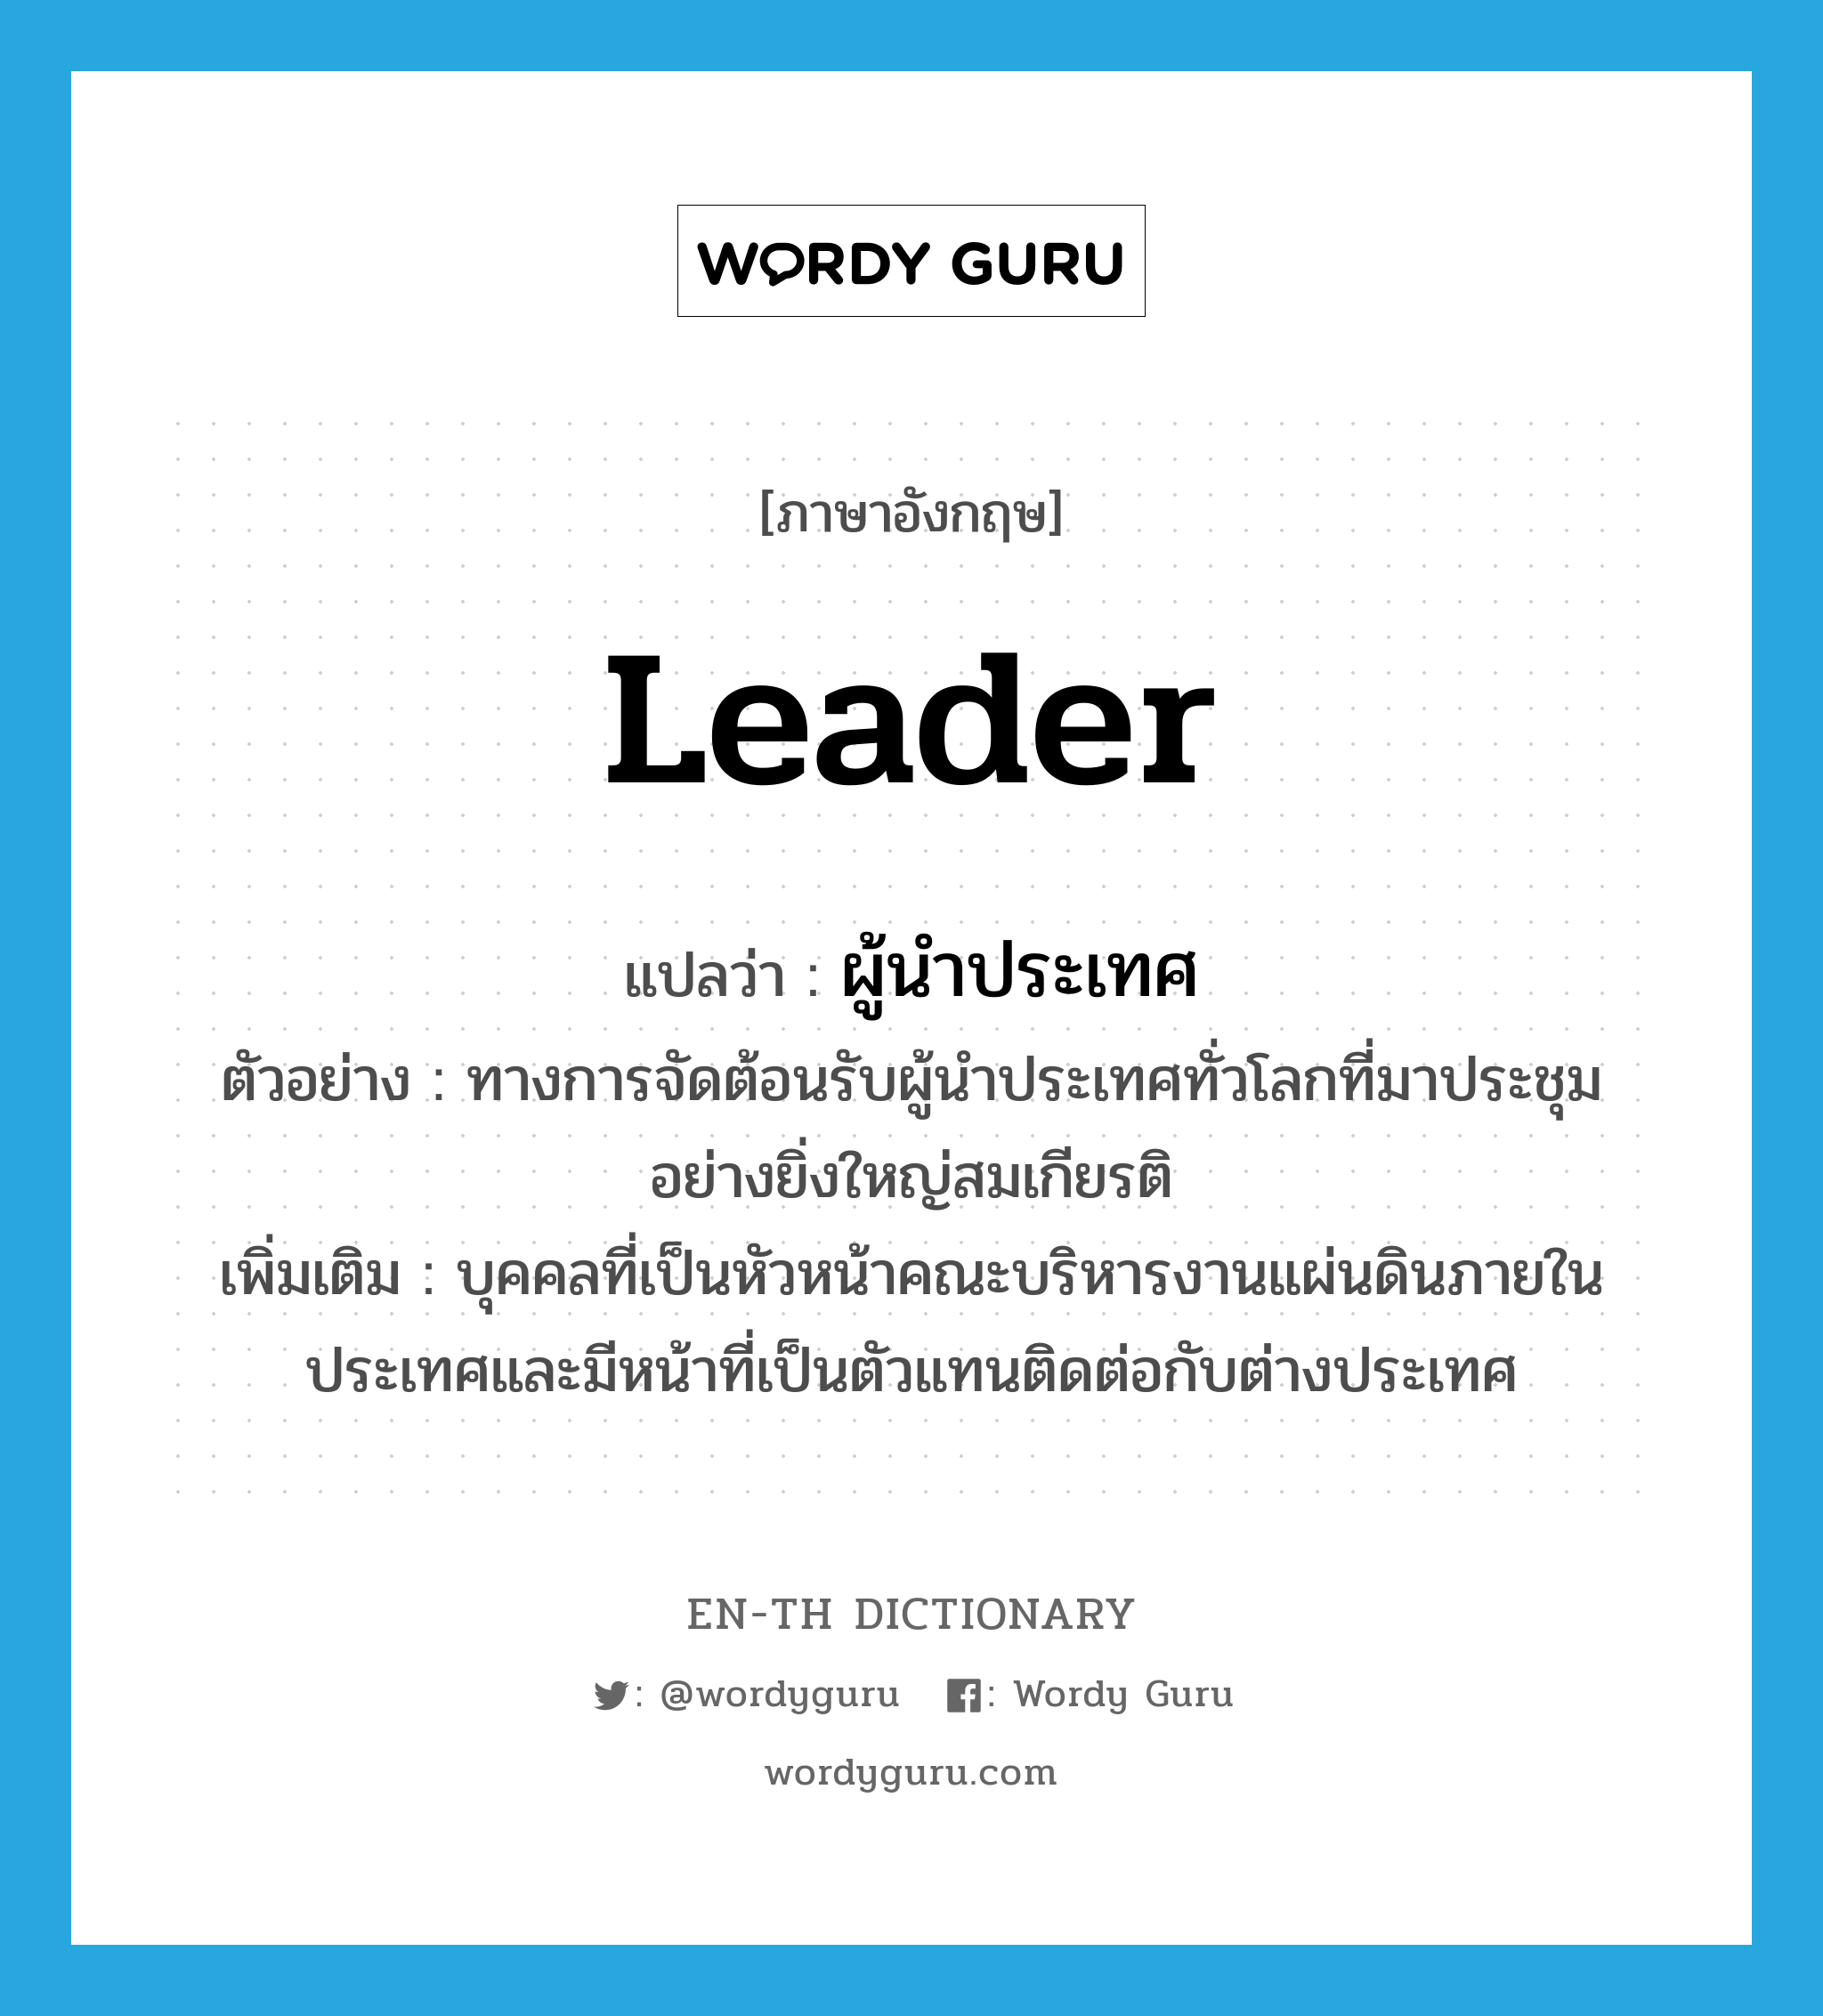 leader แปลว่า?, คำศัพท์ภาษาอังกฤษ leader แปลว่า ผู้นำประเทศ ประเภท N ตัวอย่าง ทางการจัดต้อนรับผู้นำประเทศทั่วโลกที่มาประชุม อย่างยิ่งใหญ่สมเกียรติ เพิ่มเติม บุคคลที่เป็นหัวหน้าคณะบริหารงานแผ่นดินภายในประเทศและมีหน้าที่เป็นตัวแทนติดต่อกับต่างประเทศ หมวด N